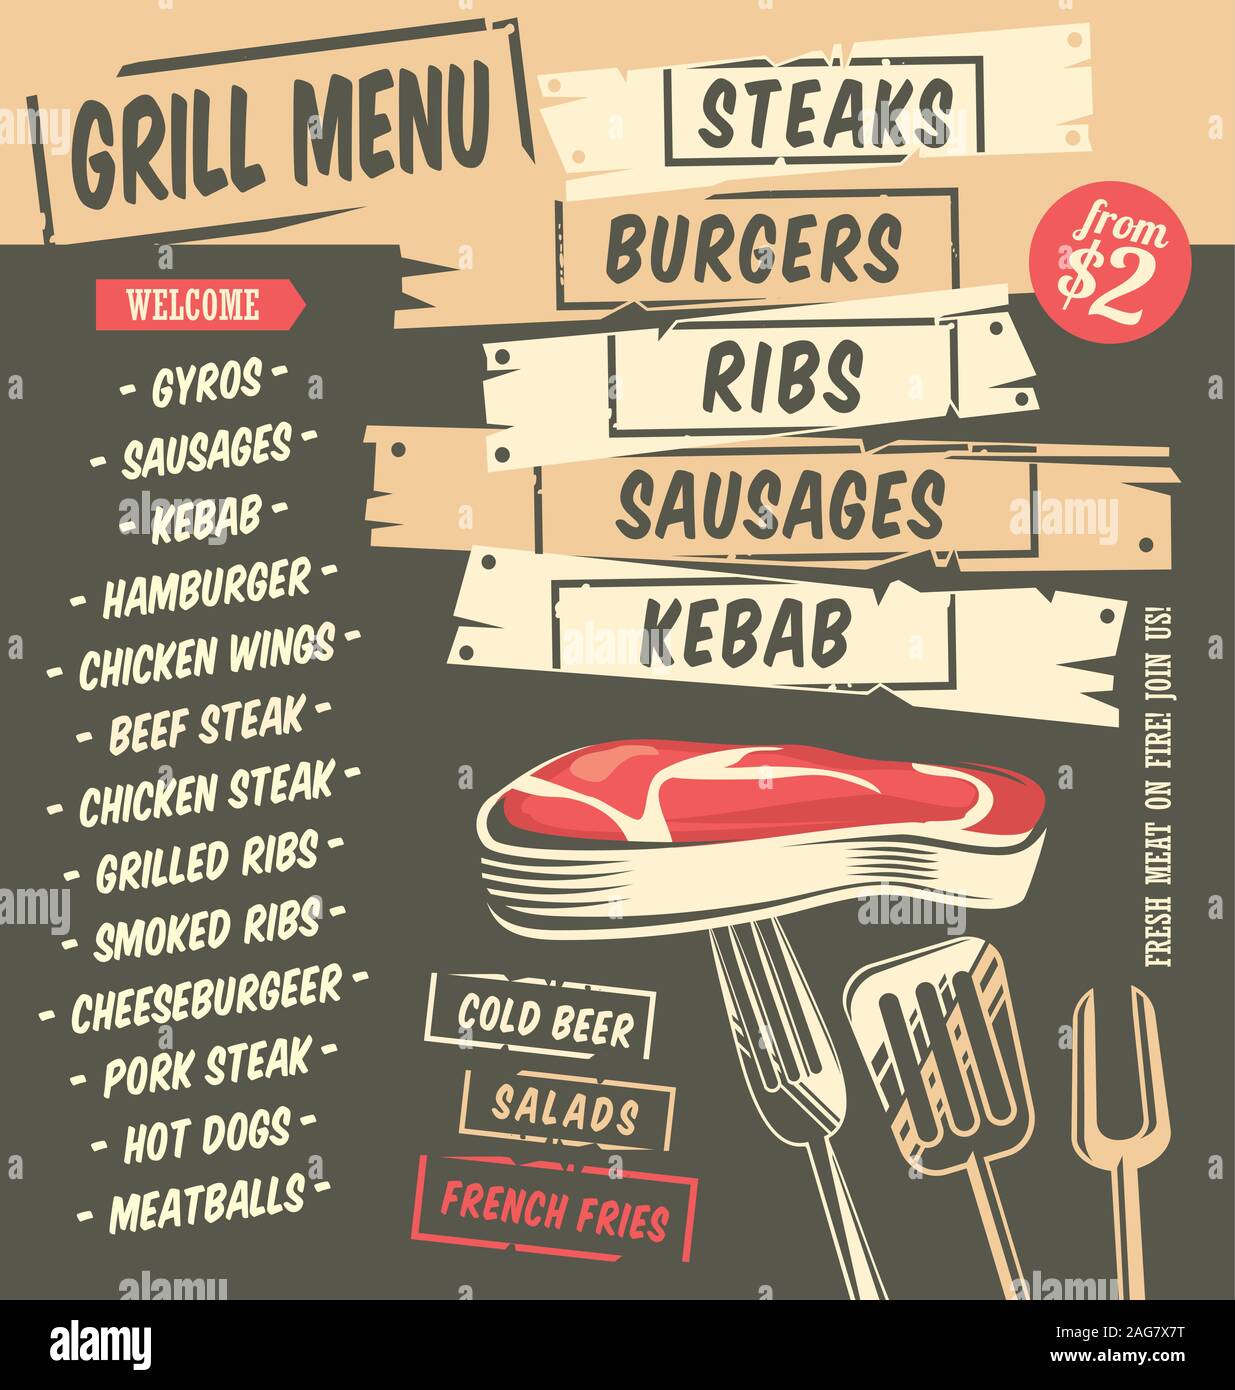 Menu Grill creative design artistici con grafica di cibo. Il menu del ristorante modello. Bistecche e hamburger, del kebab, nervature, salsicce illustrazione vettoriale. Illustrazione Vettoriale